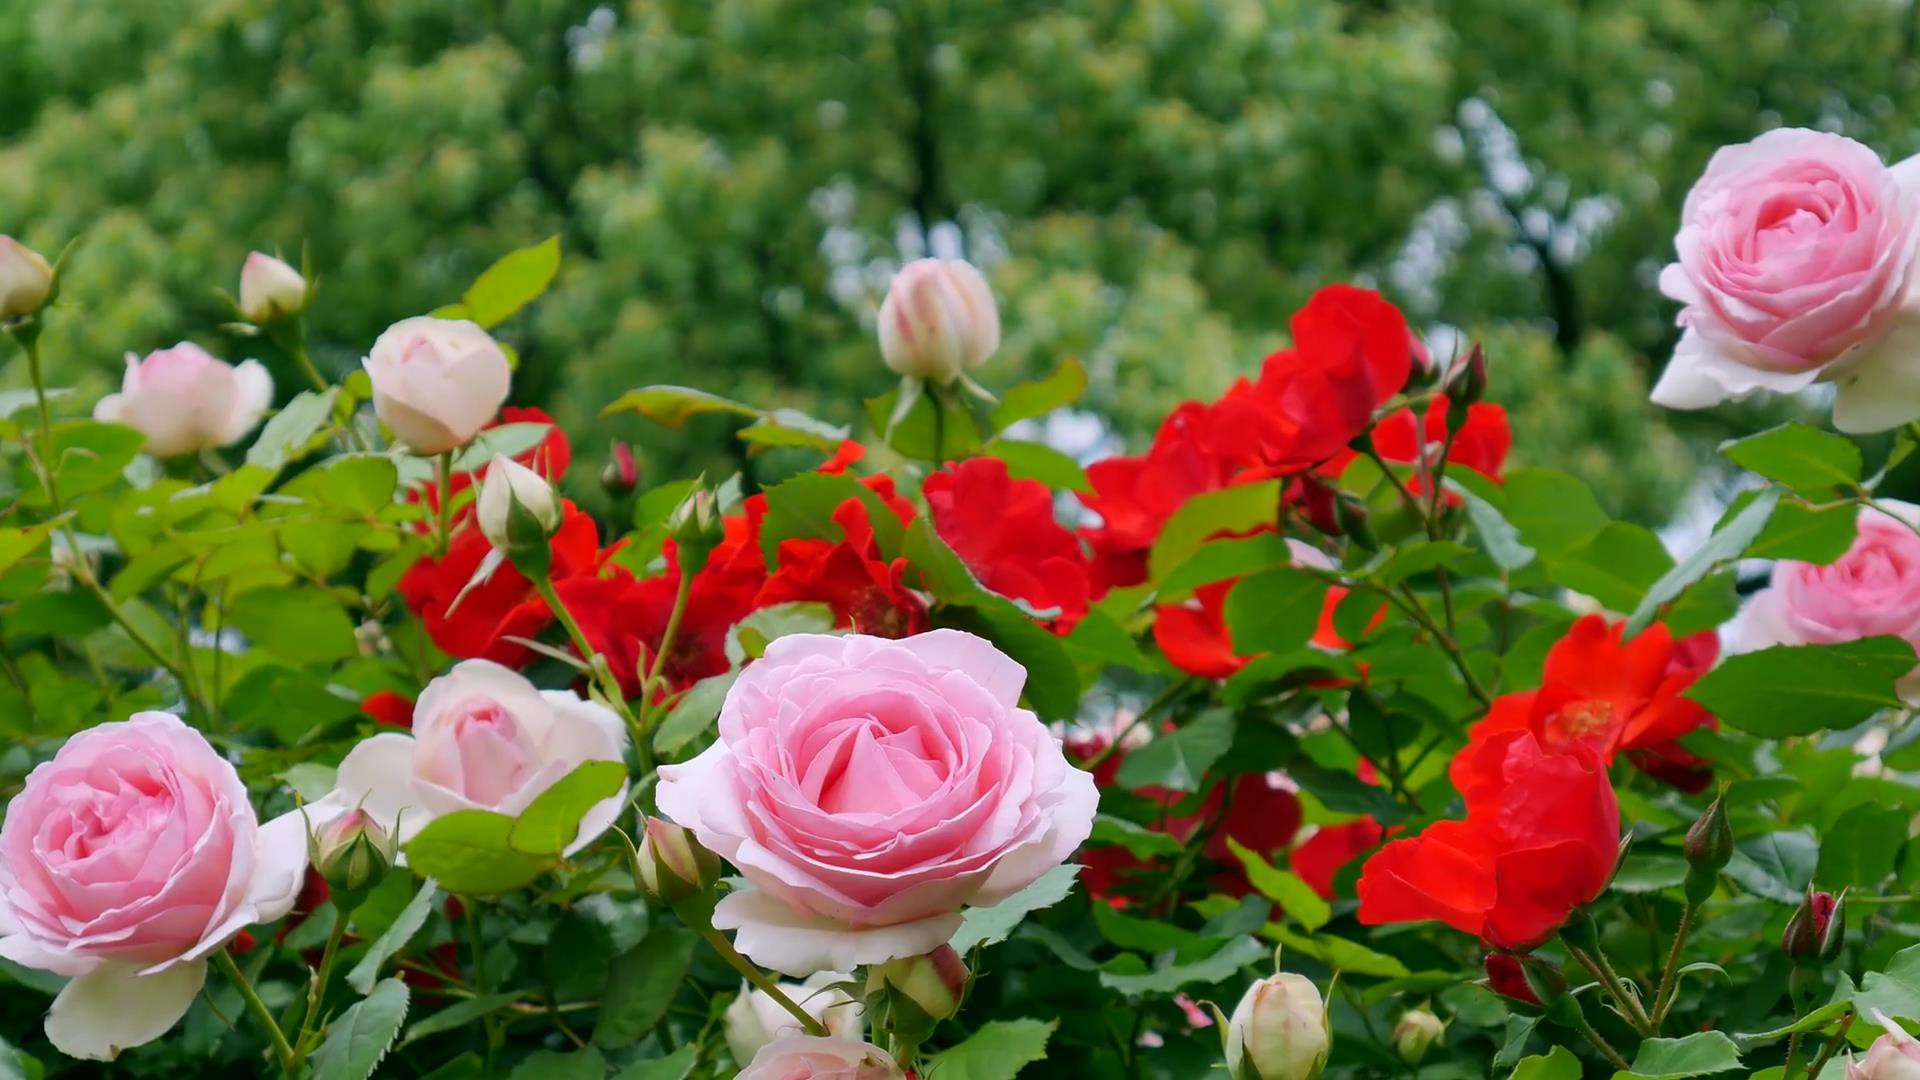 Đến thăm khu vườn trên đảo ở Nhật Bản với 2.600 cây hoa hồng rung rinh trước gió đẹp mê mẩn lòng người - Ảnh 21.